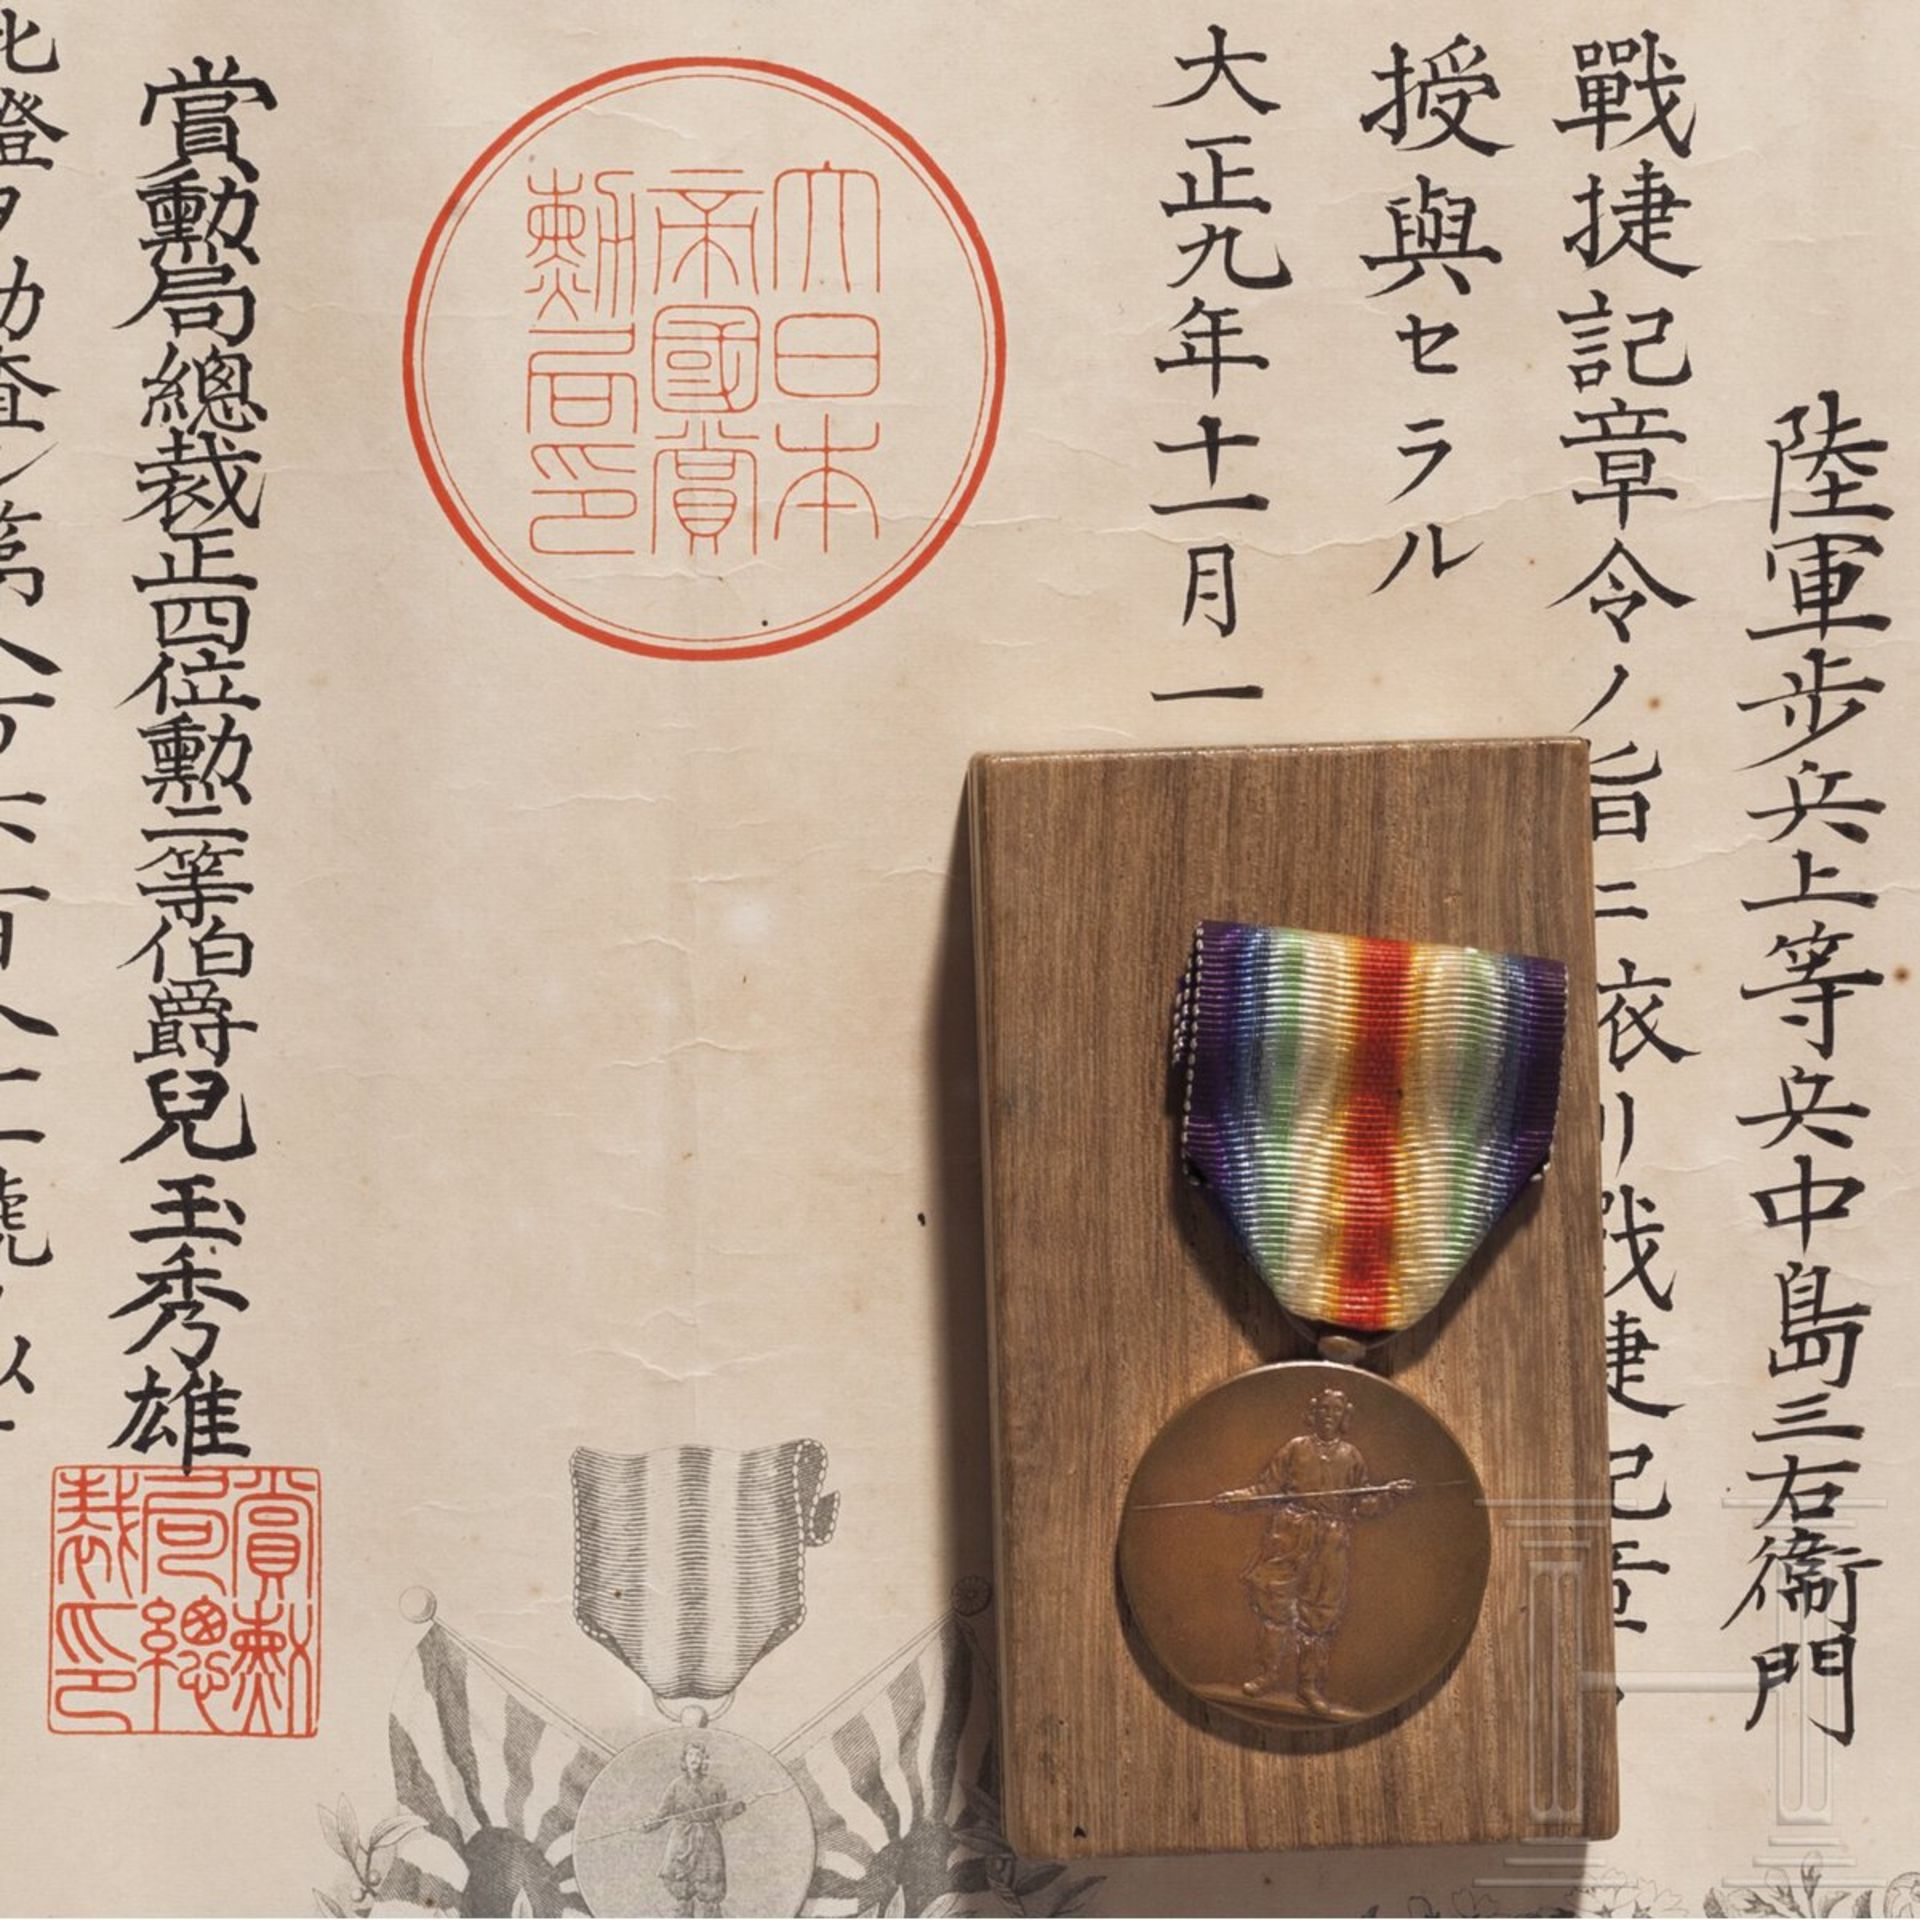 Japanische Siegesmedaille aus der Zeit des WW I - Image 3 of 4